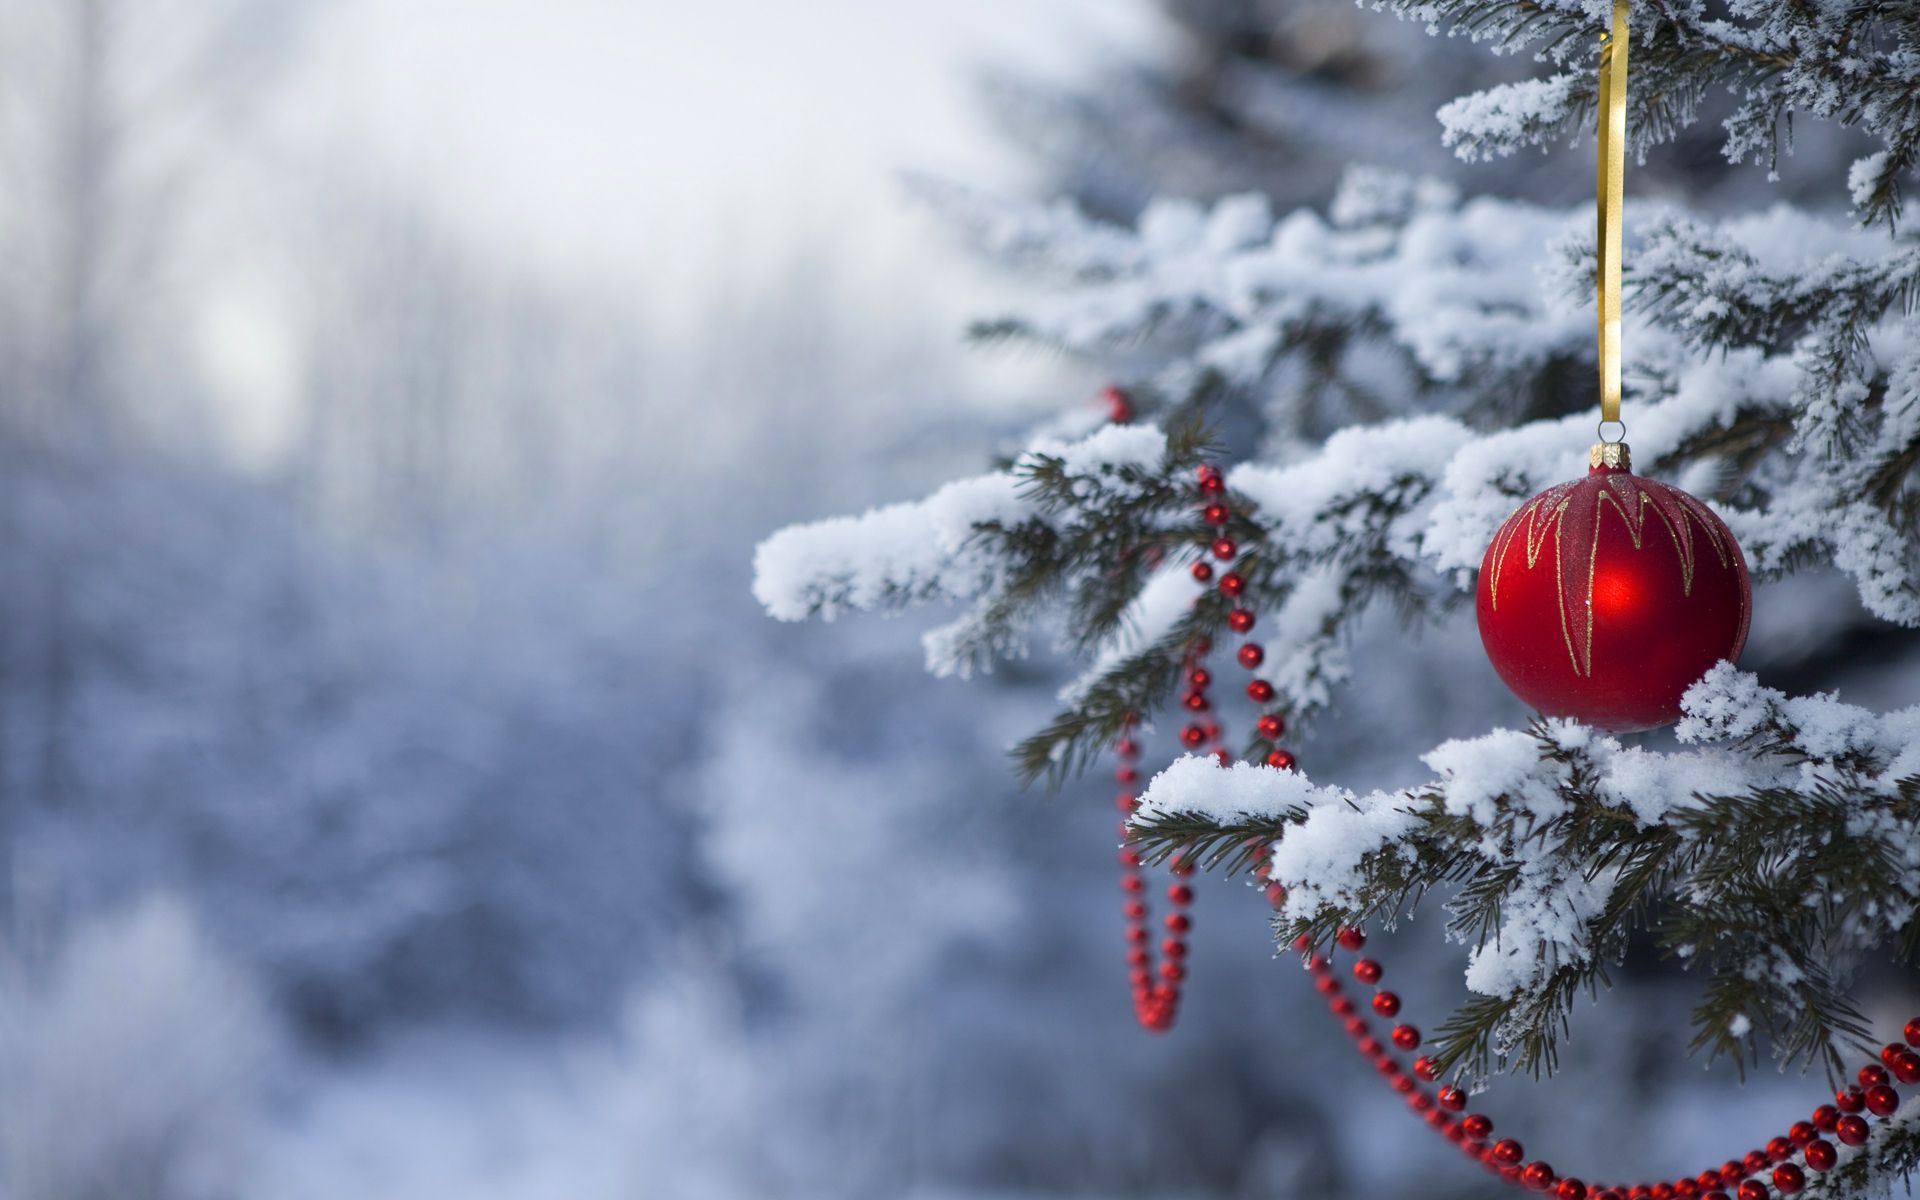 gambar ornament pada pohon natal